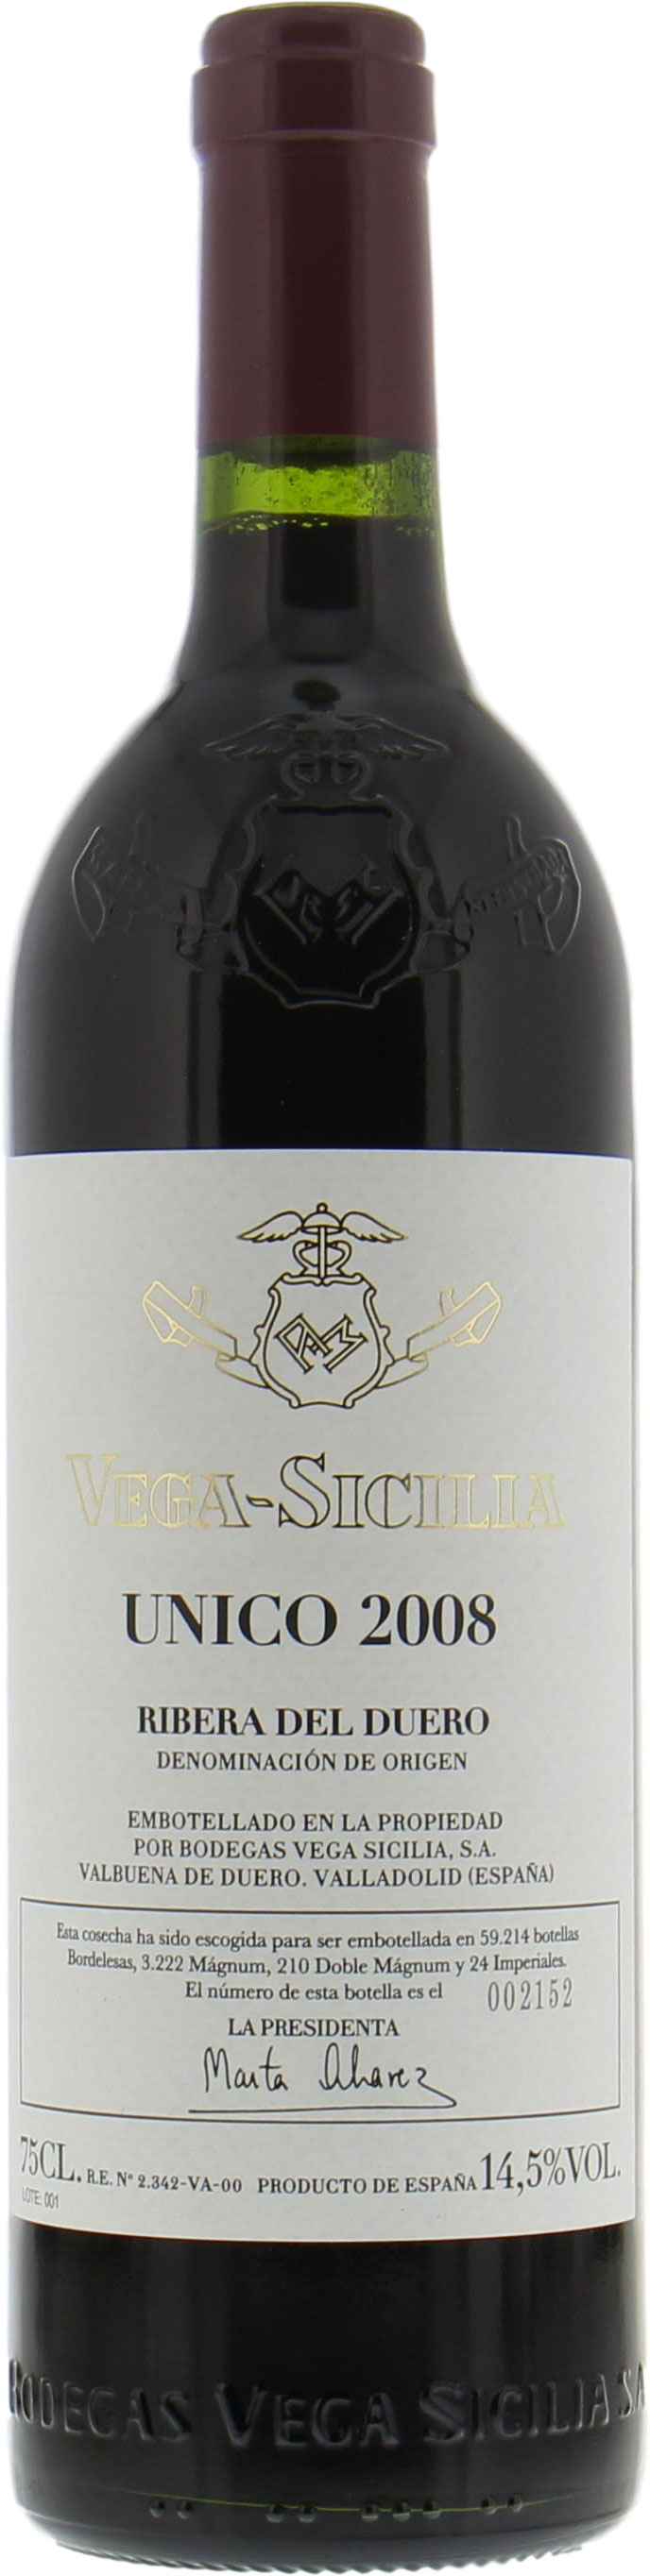 Vega Sicilia - Unico 2008